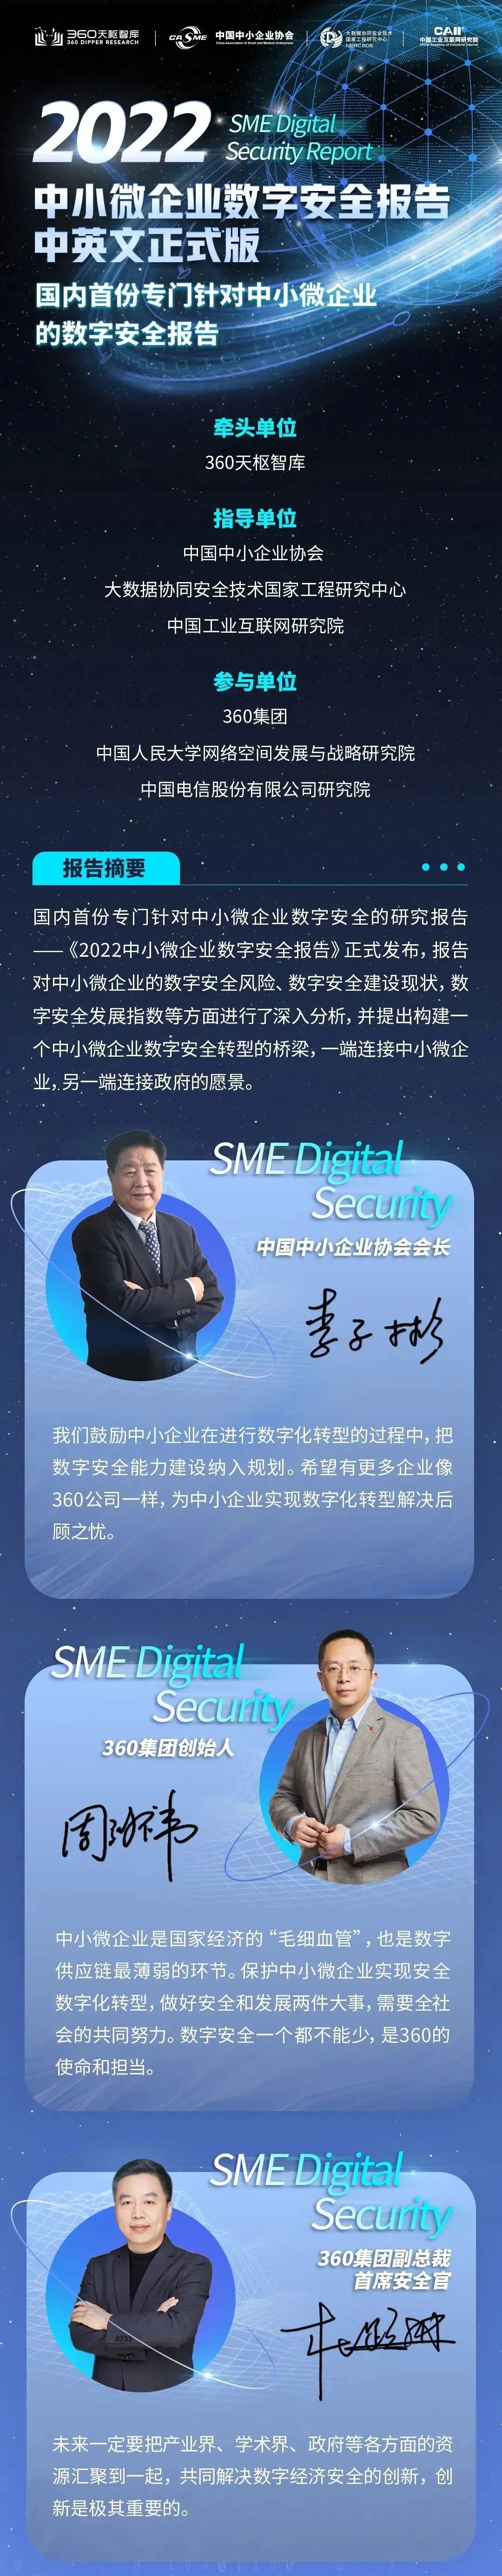 360国内首份《中小微企业数字安全报告》获中国国际数字经济博览会“创新成果”奖